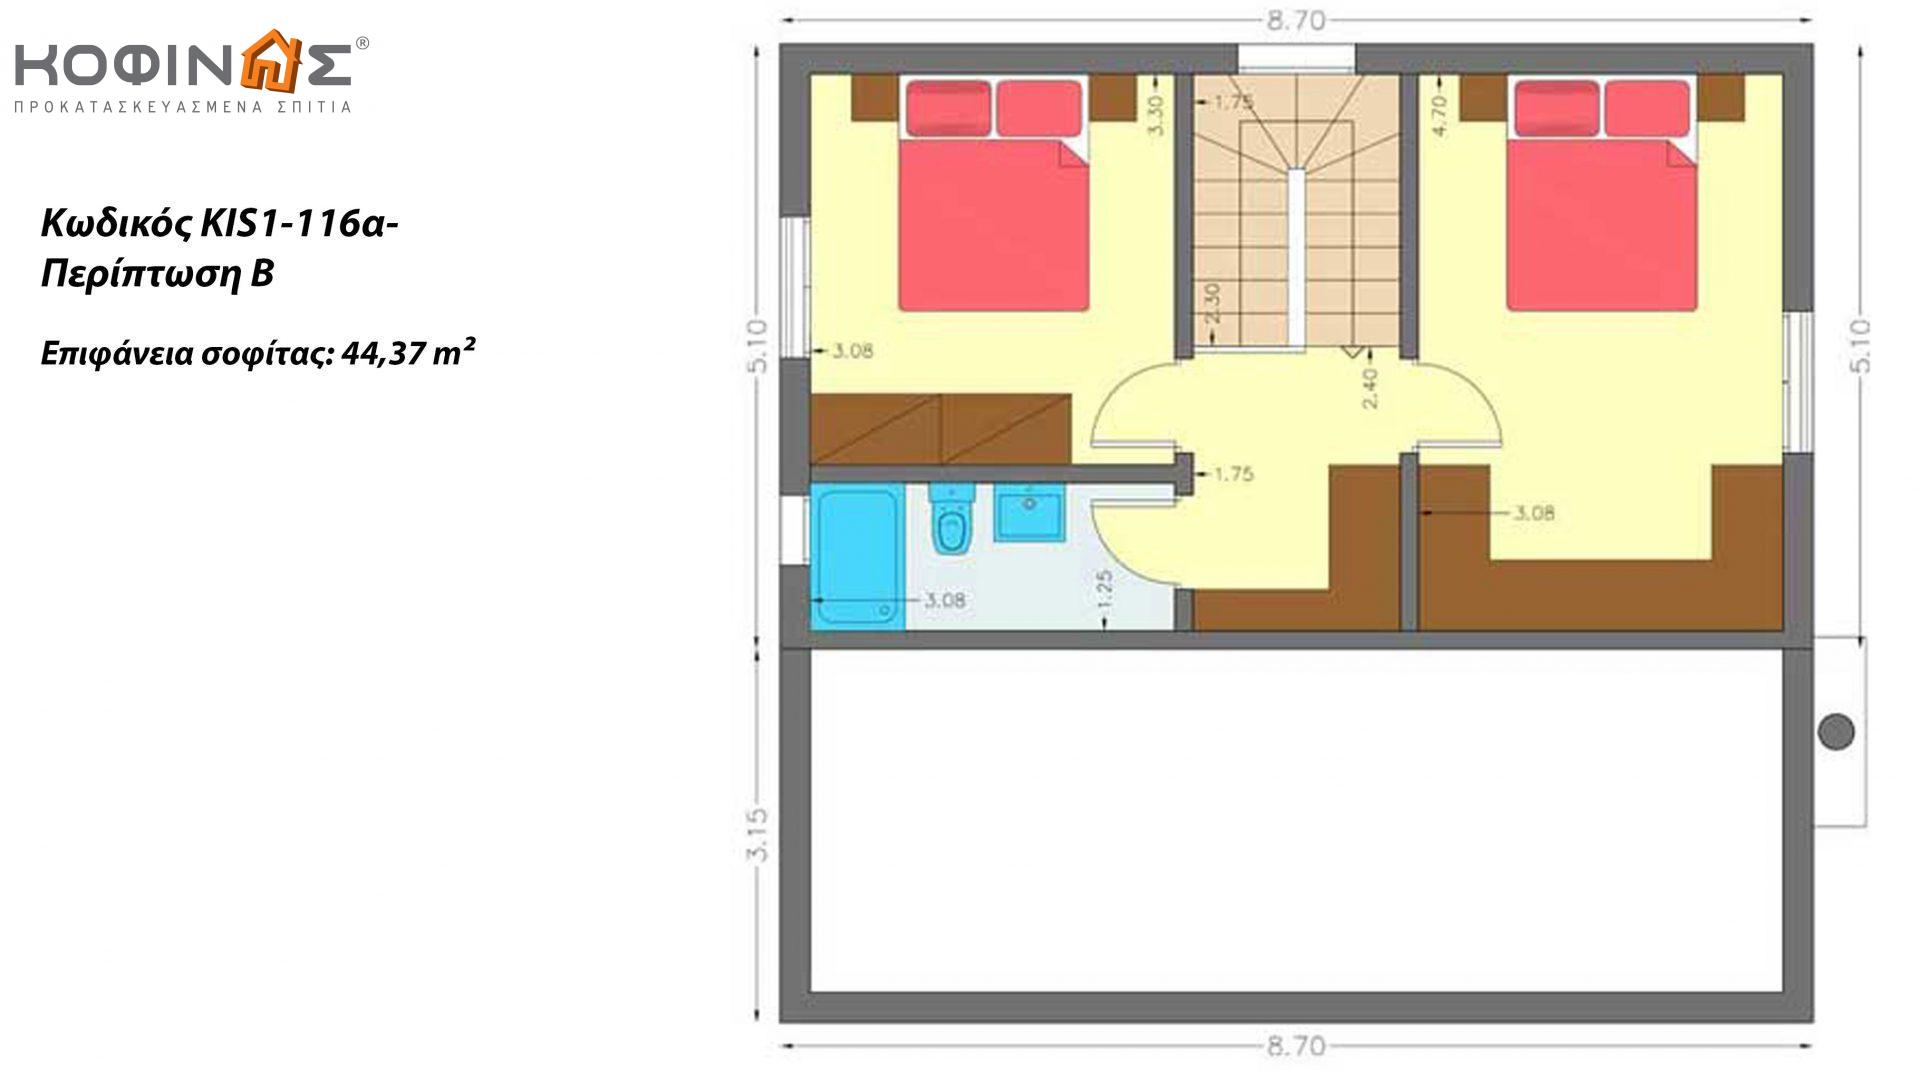 Ισόγεια Κατοικία με Σοφίτα KIS1-116α, συνολικής επιφάνειας 116,15 τ.μ. ,συνολική επιφάνεια στεγασμένων χώρων  12,30 τ.μ.